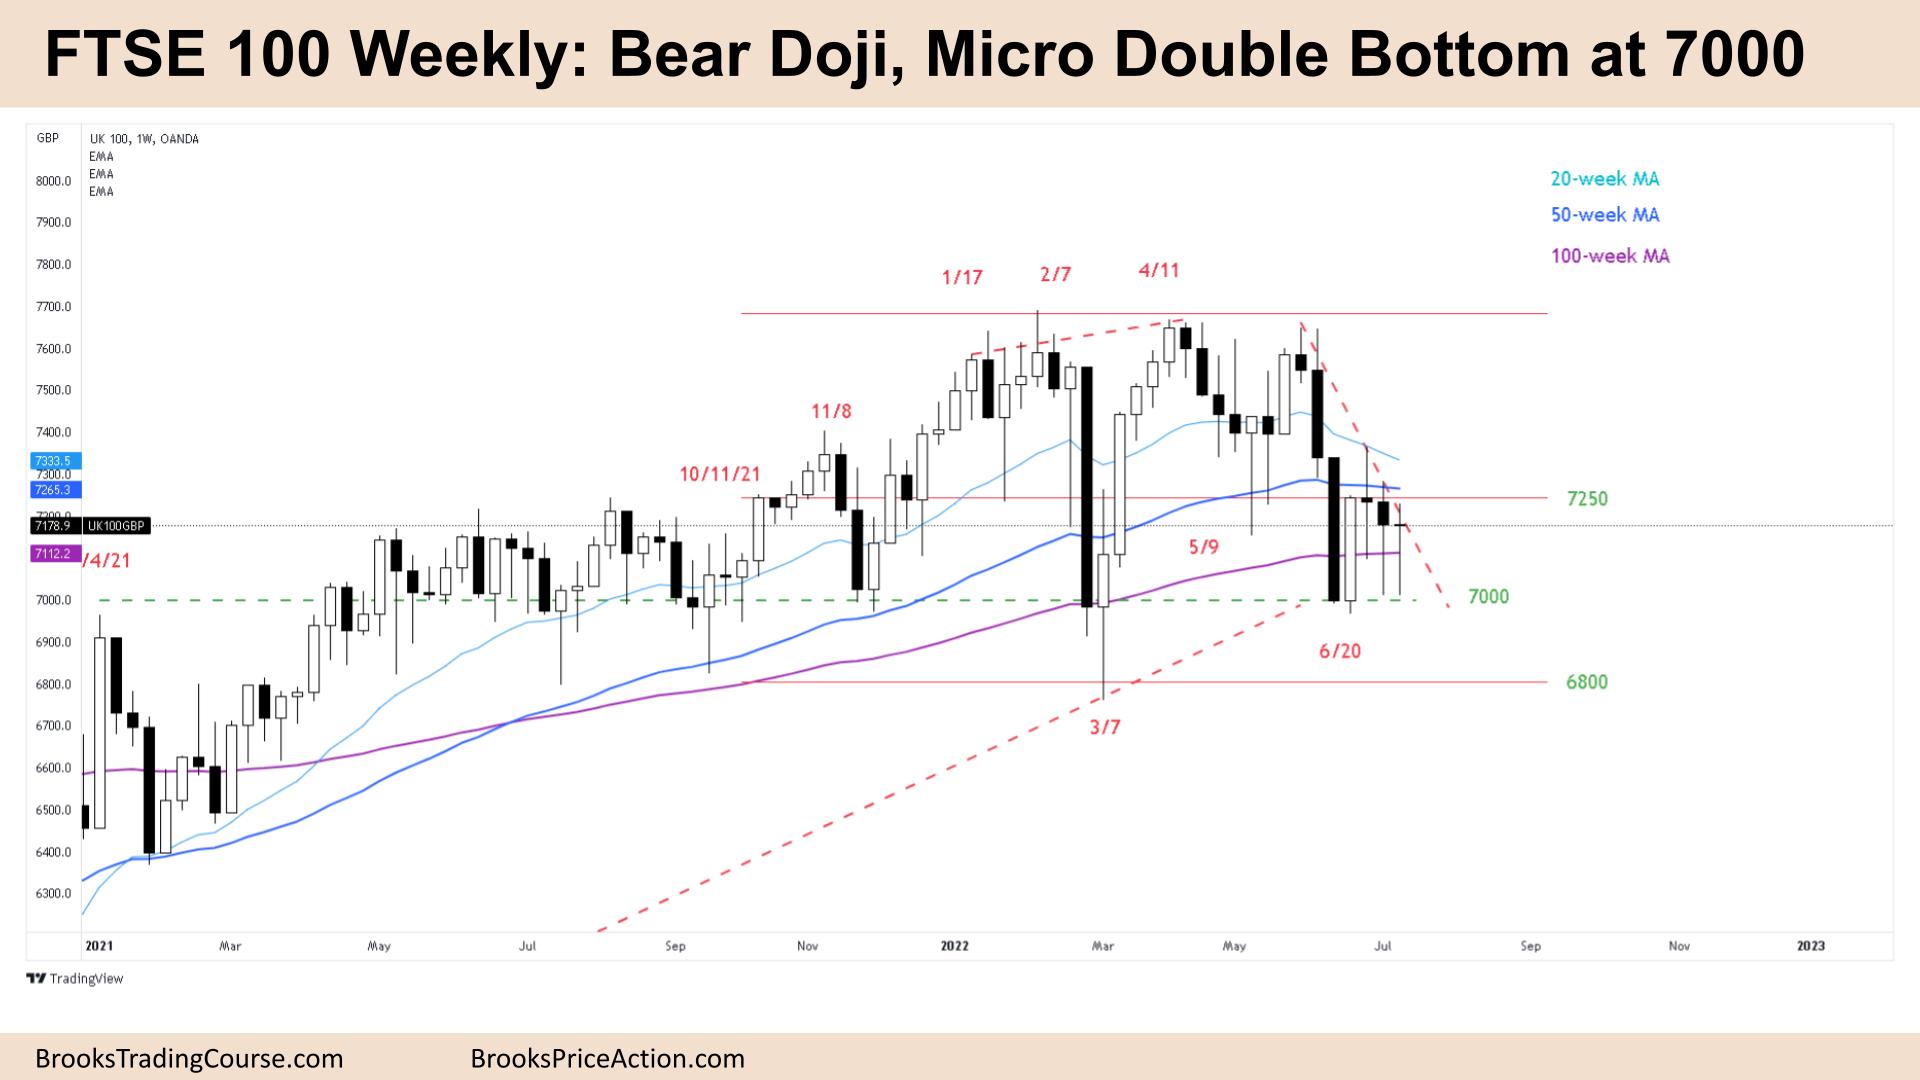 FTSE 100 Weekly Third Bear Doji Micro Double Bottom at 7000